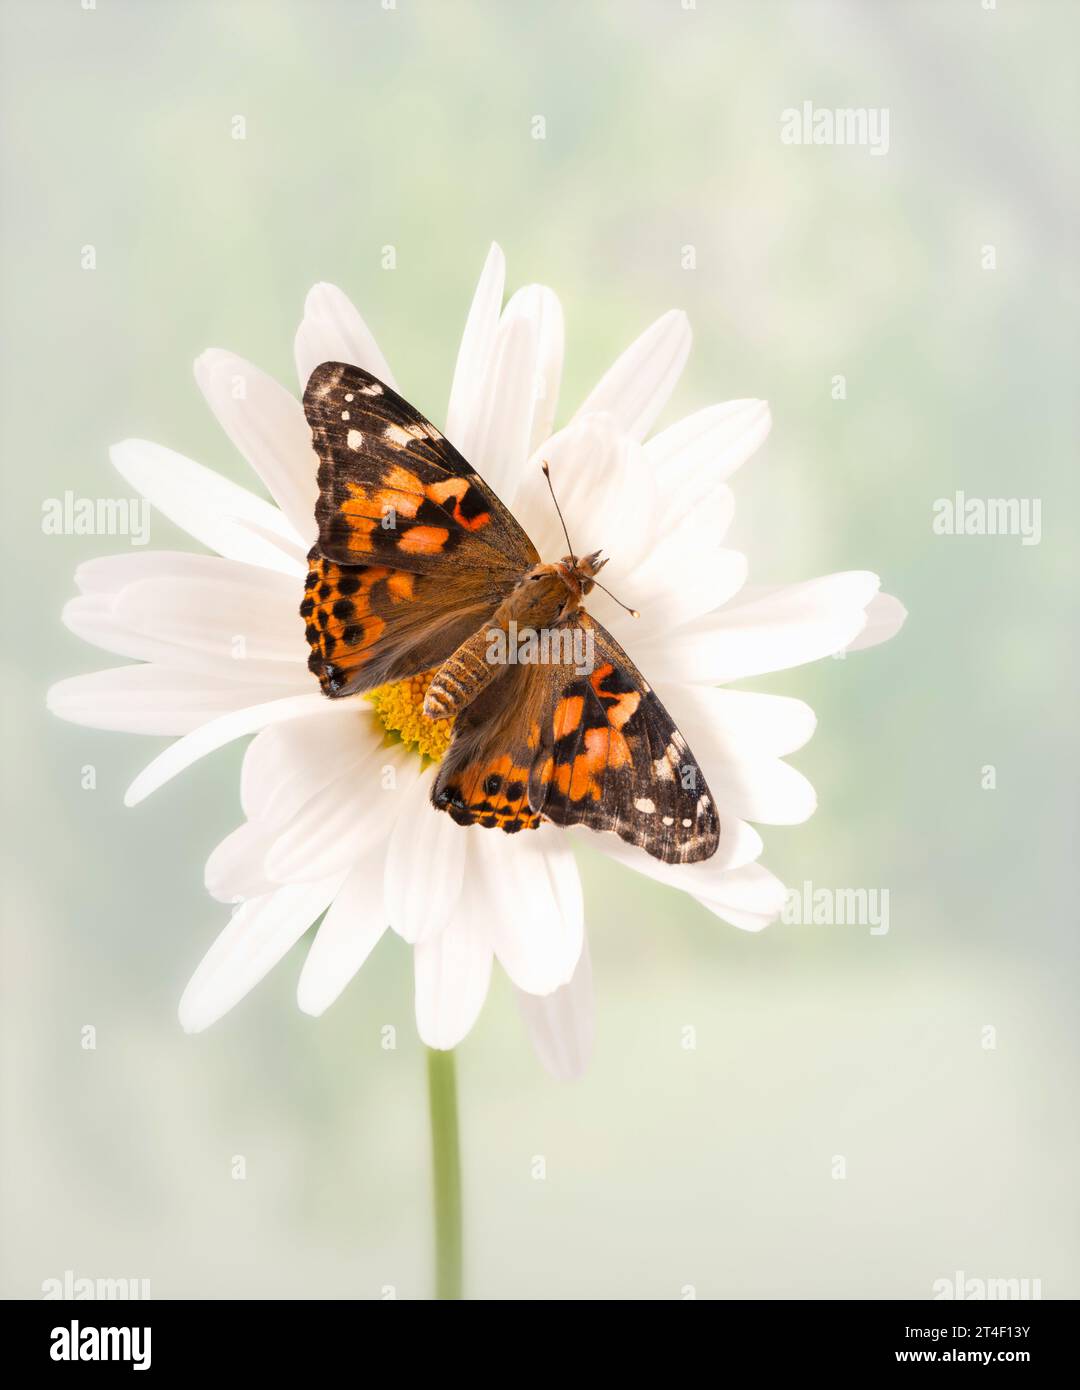 Macro d'une dame papillon peinte (vanessa cardui) reposant sur une fleur blanche. Vue de dessus avec ailes écartées ouvertes. Banque D'Images